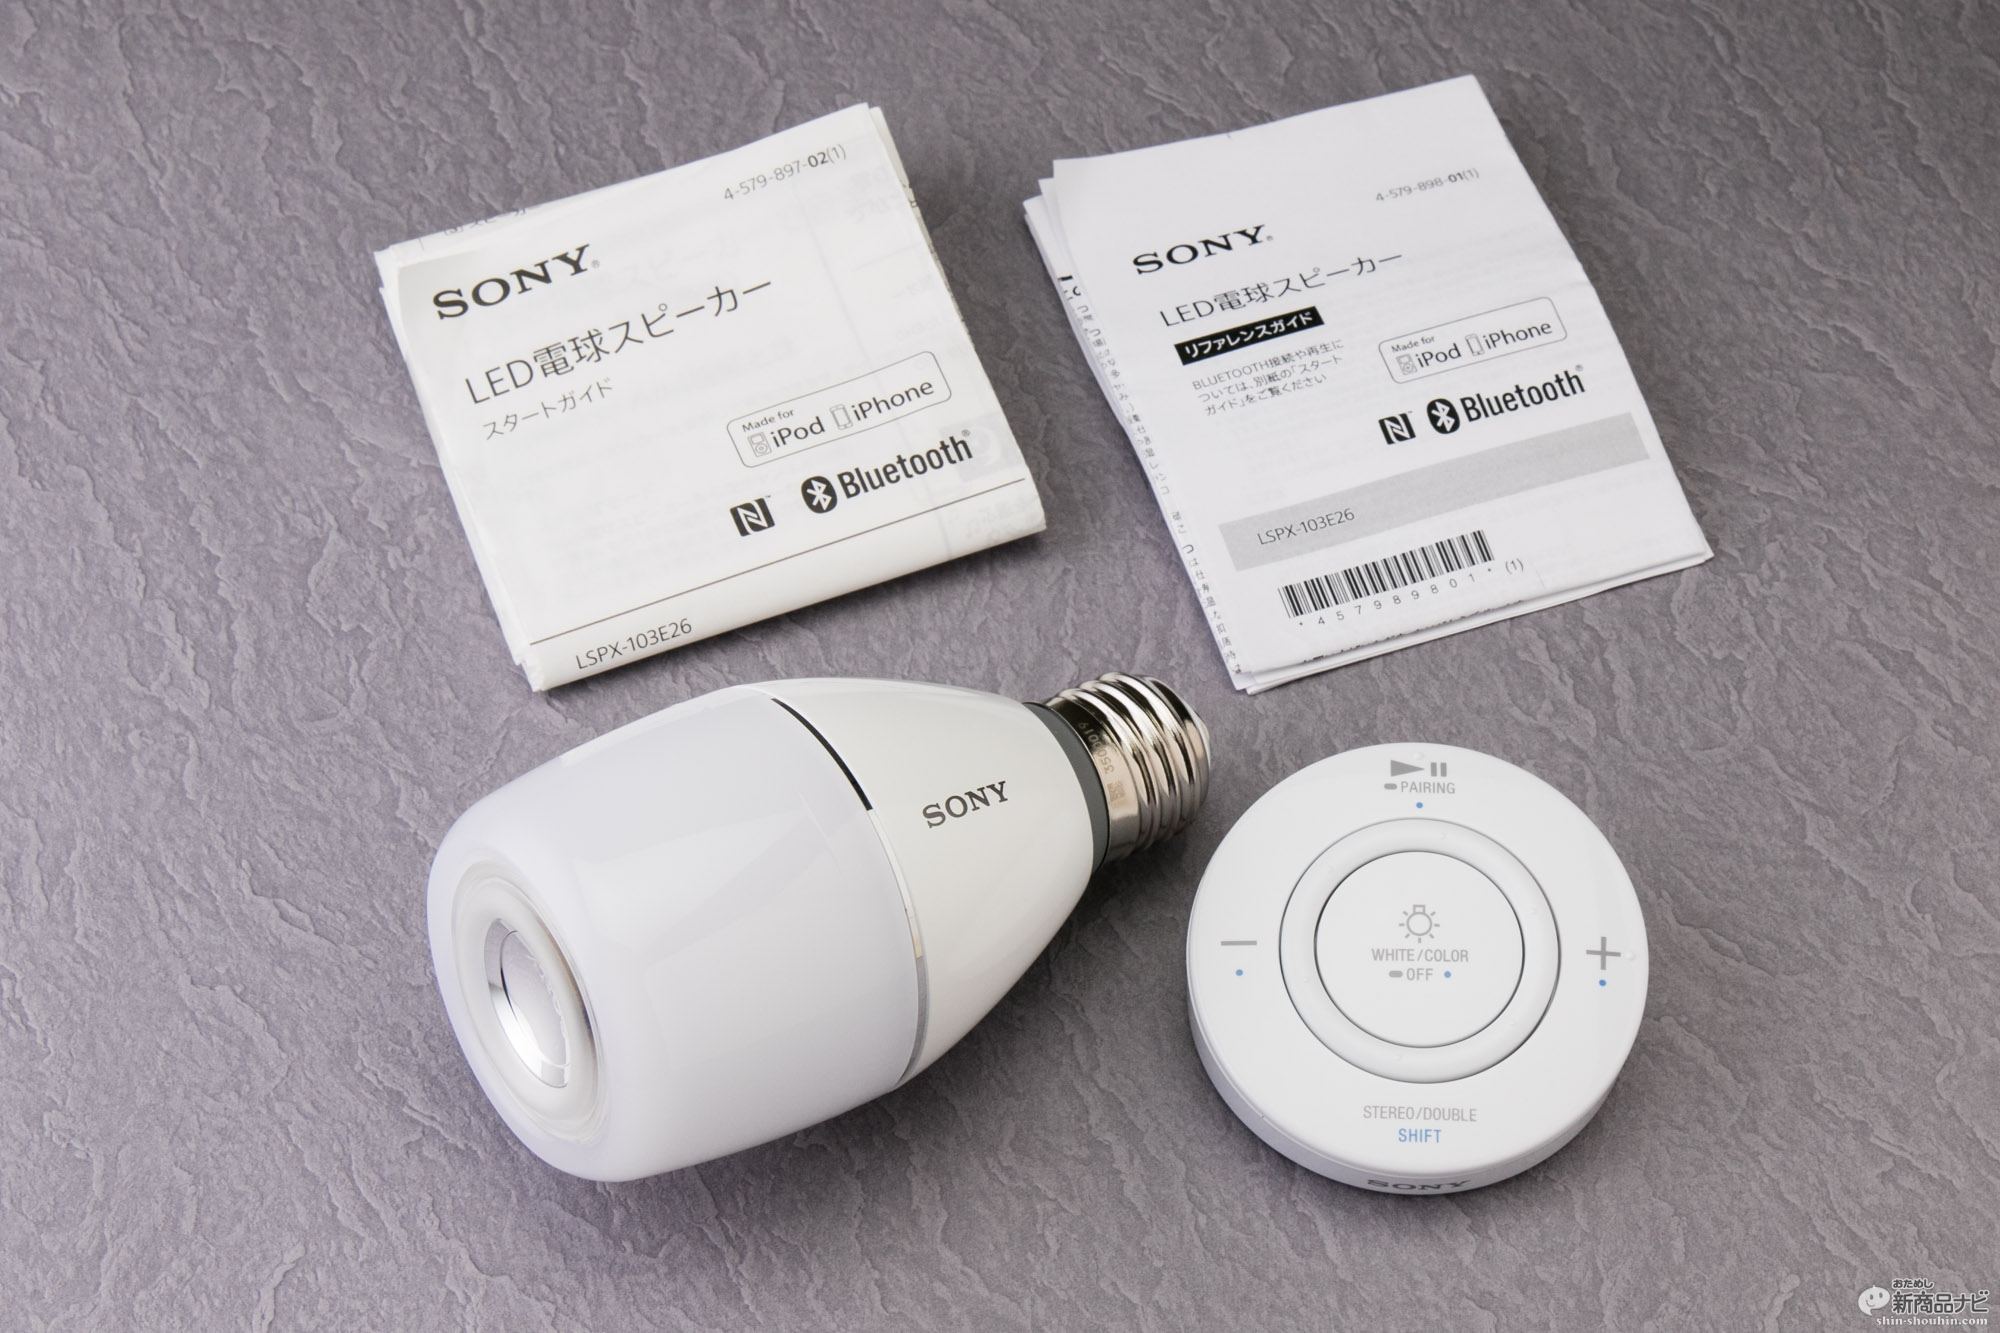 おためし新商品ナビ » Blog Archive » 『LED電球スピーカー LSPX-103E2